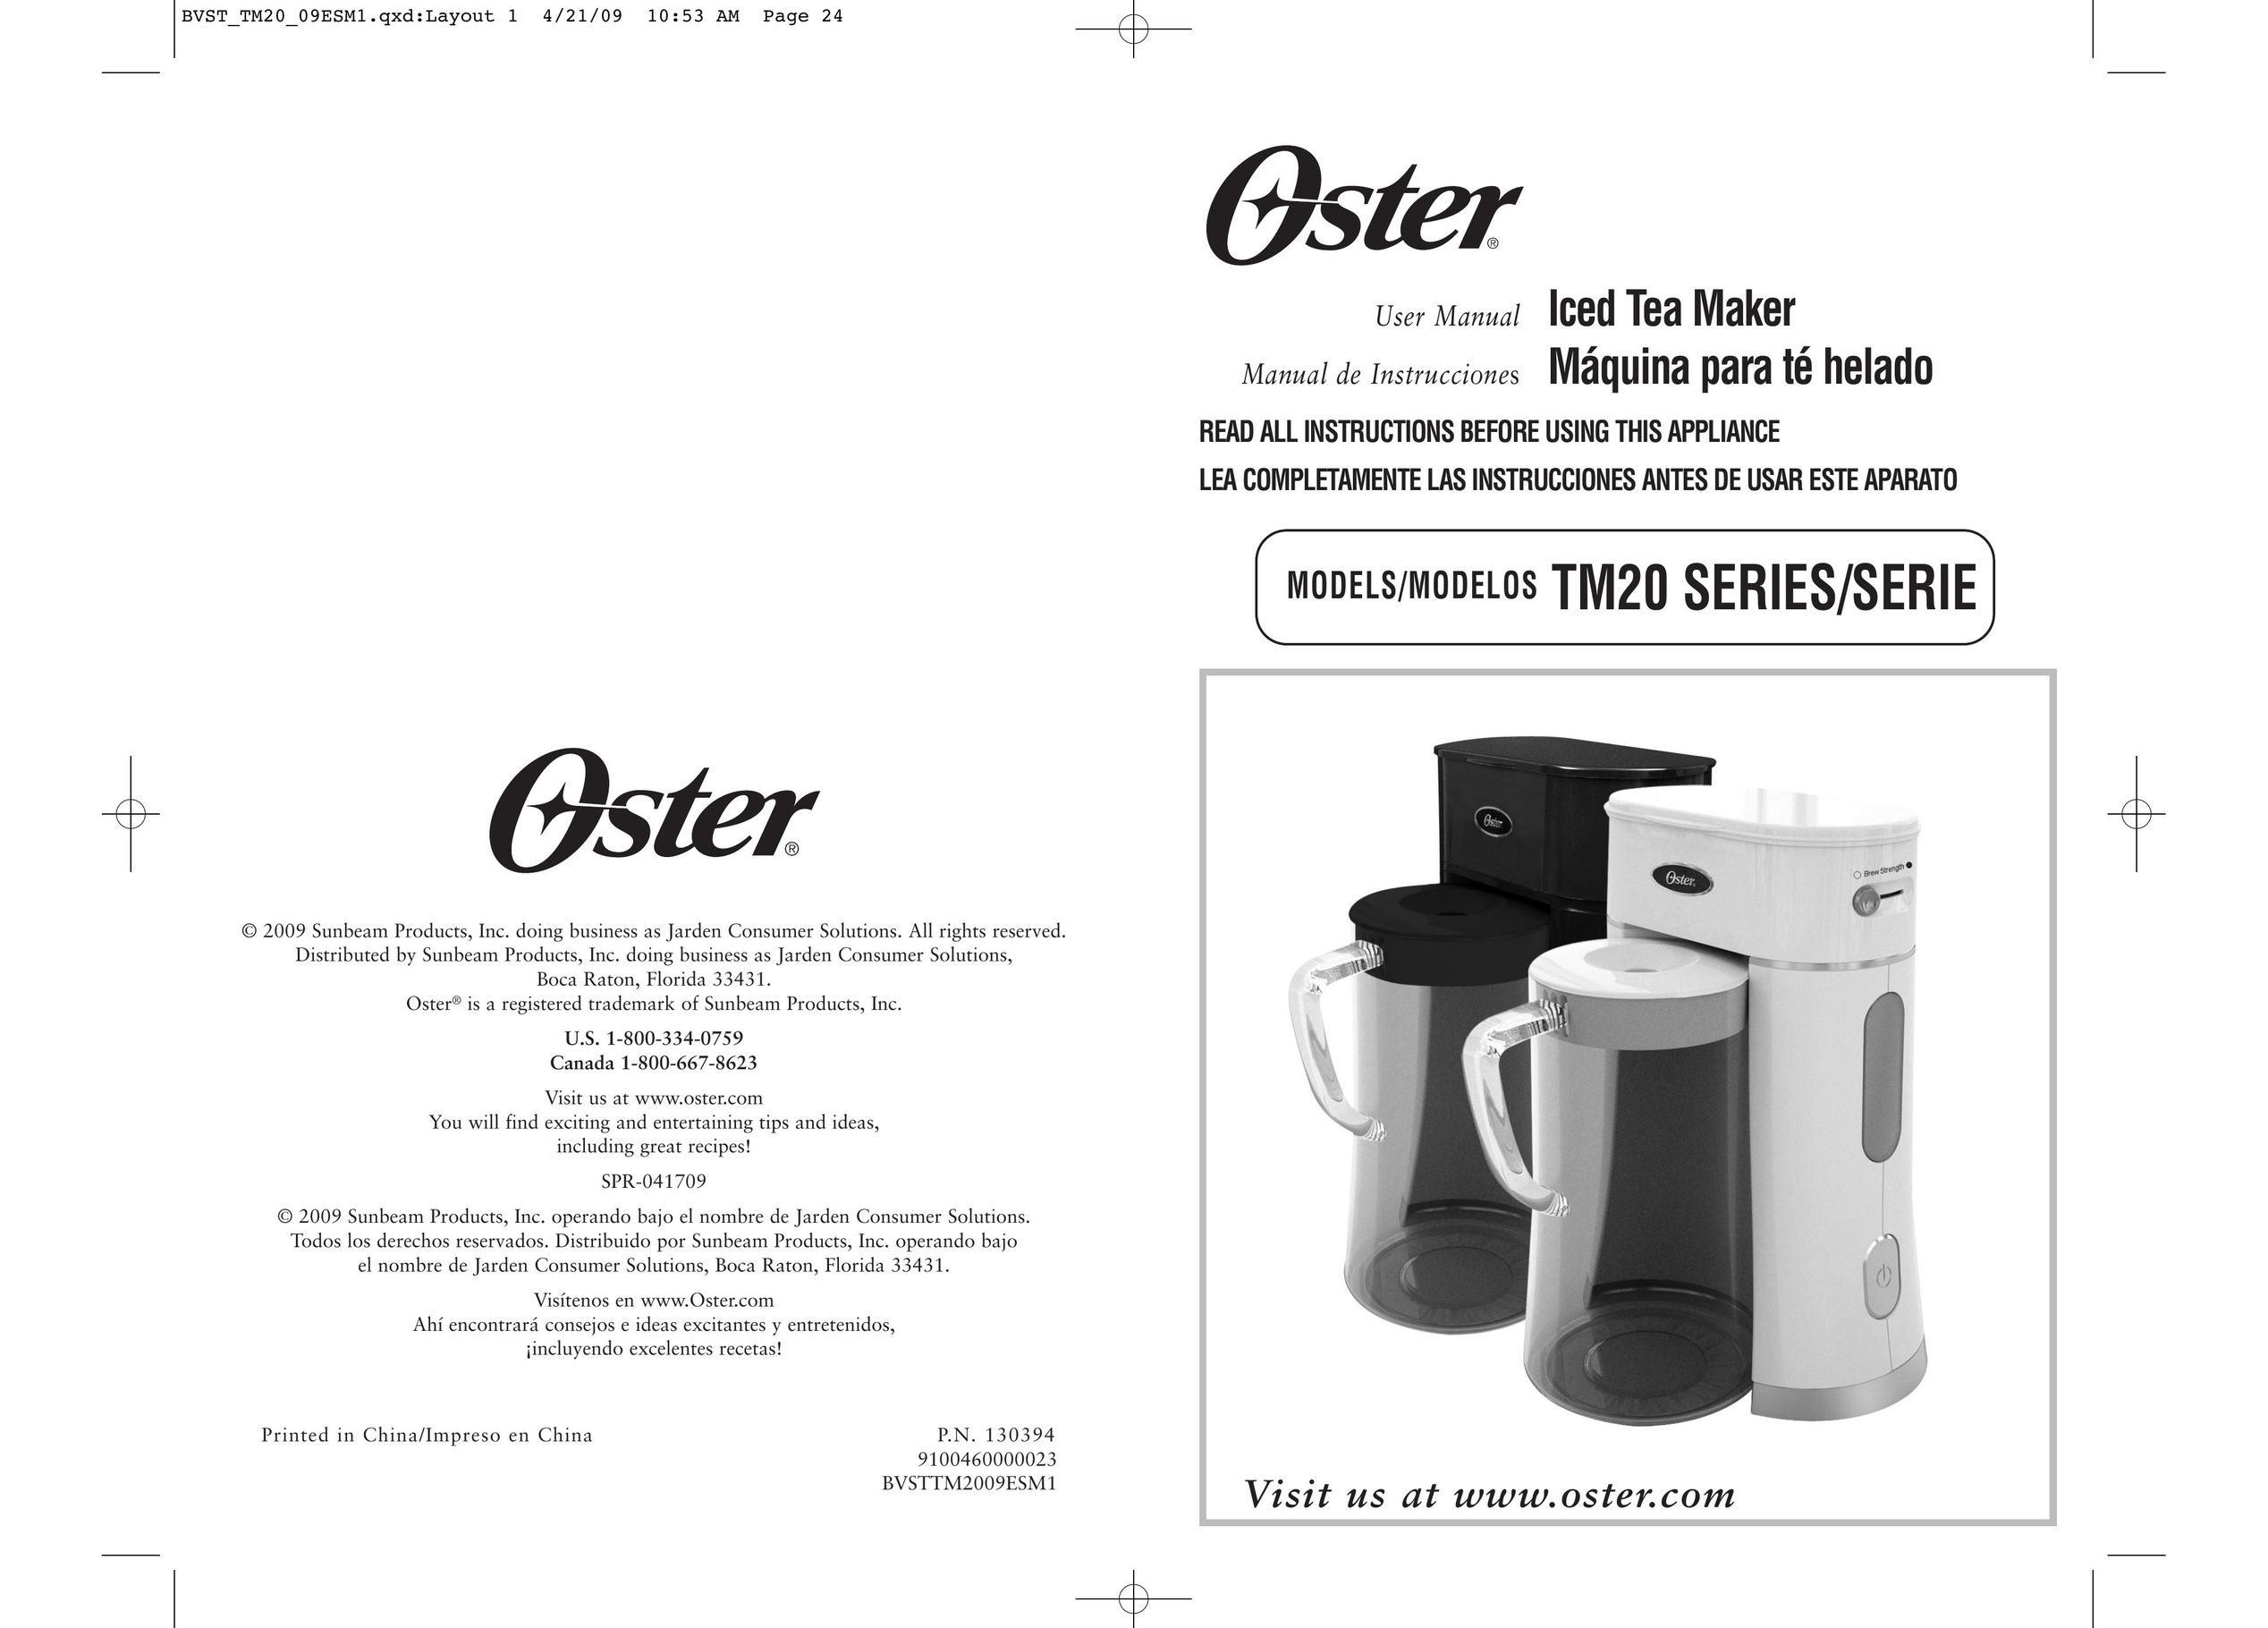 Oster BVST-TM25 Ice Tea Maker User Manual